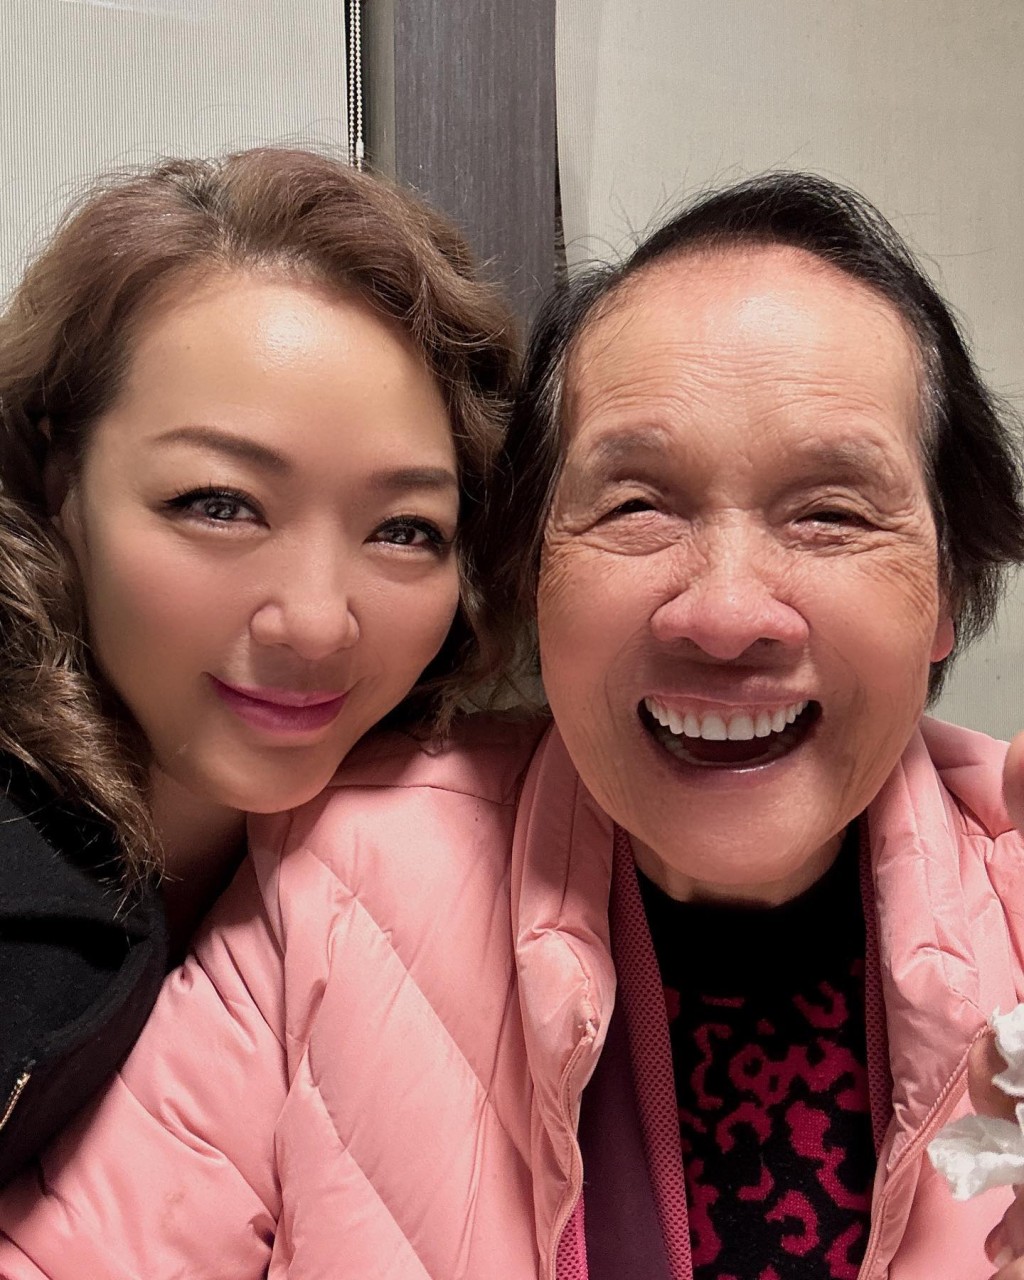 網民留言希望郭少芸好好珍惜與媽咪相處的時光。